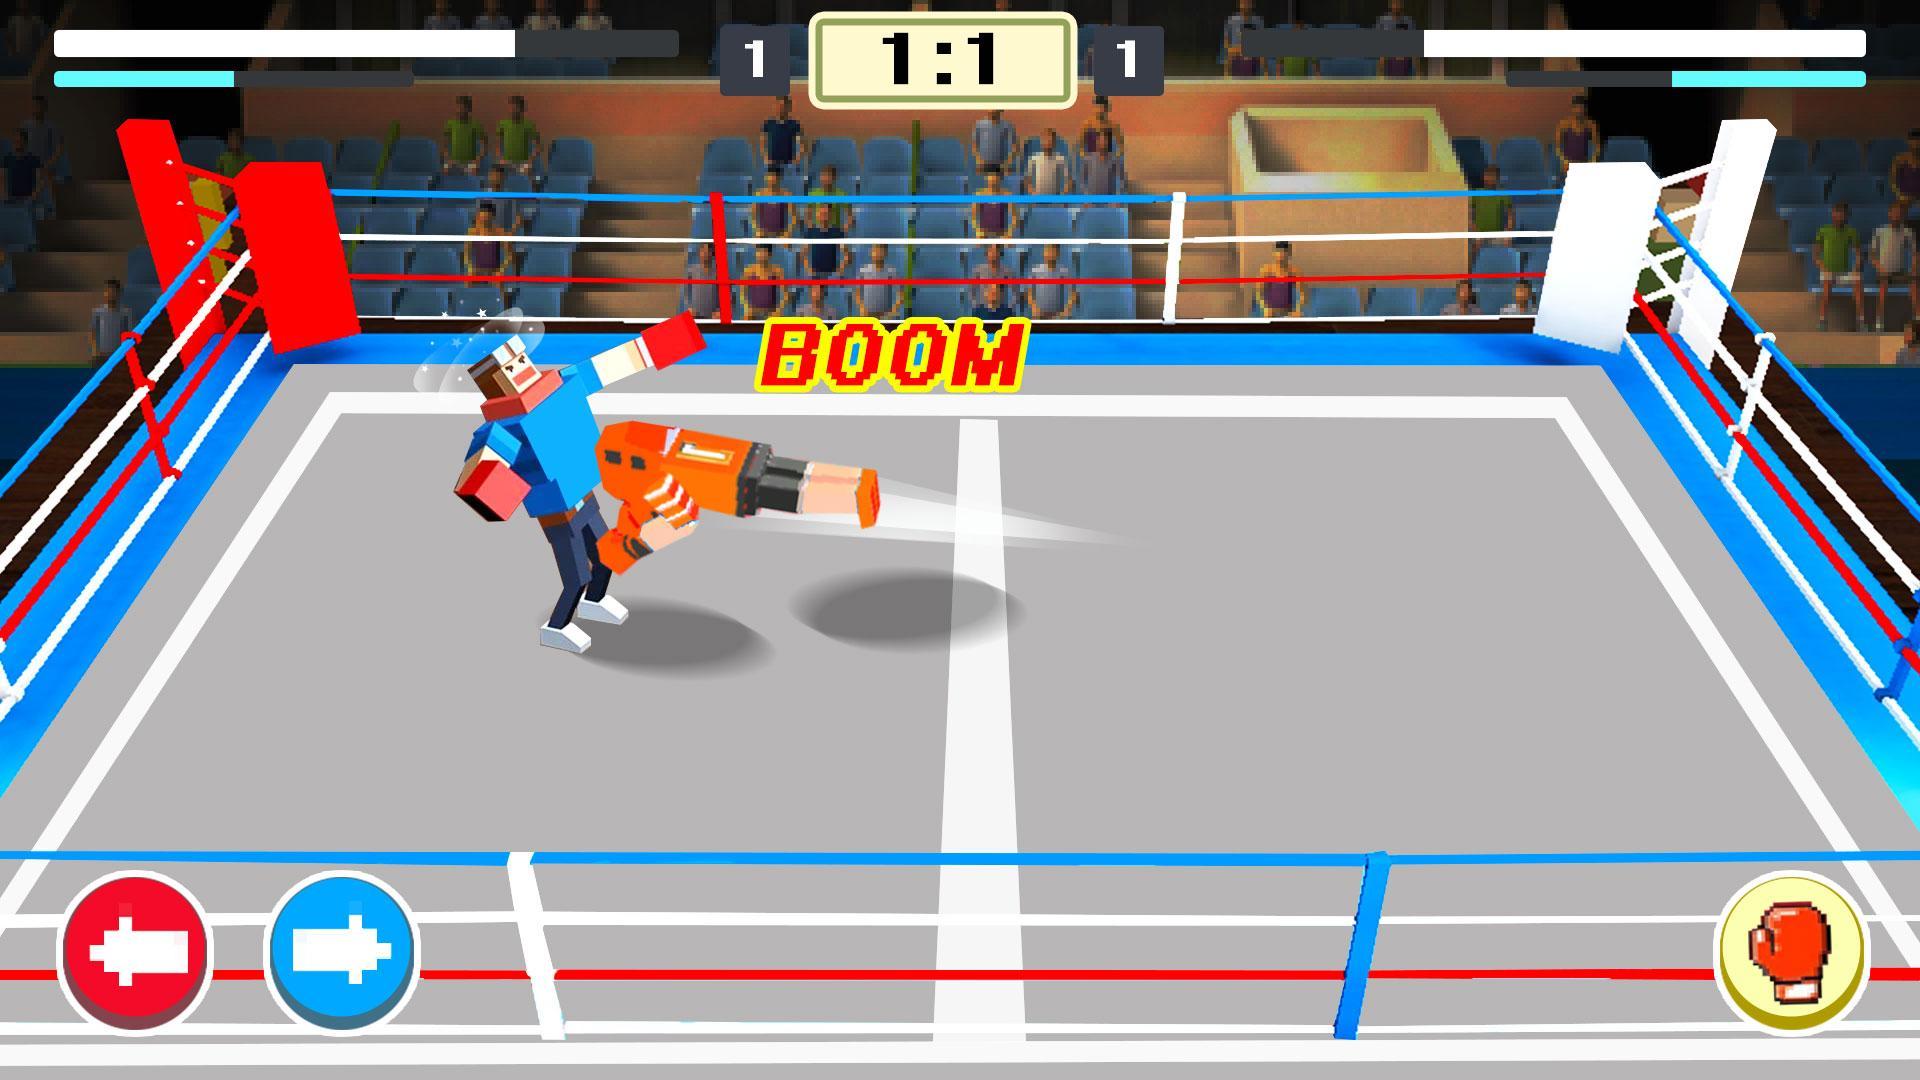 Screenshot 1 of Tinju Tambang - 2019 Sukan permainan pertarungan dunia yang menyeronokkan 1.0.1